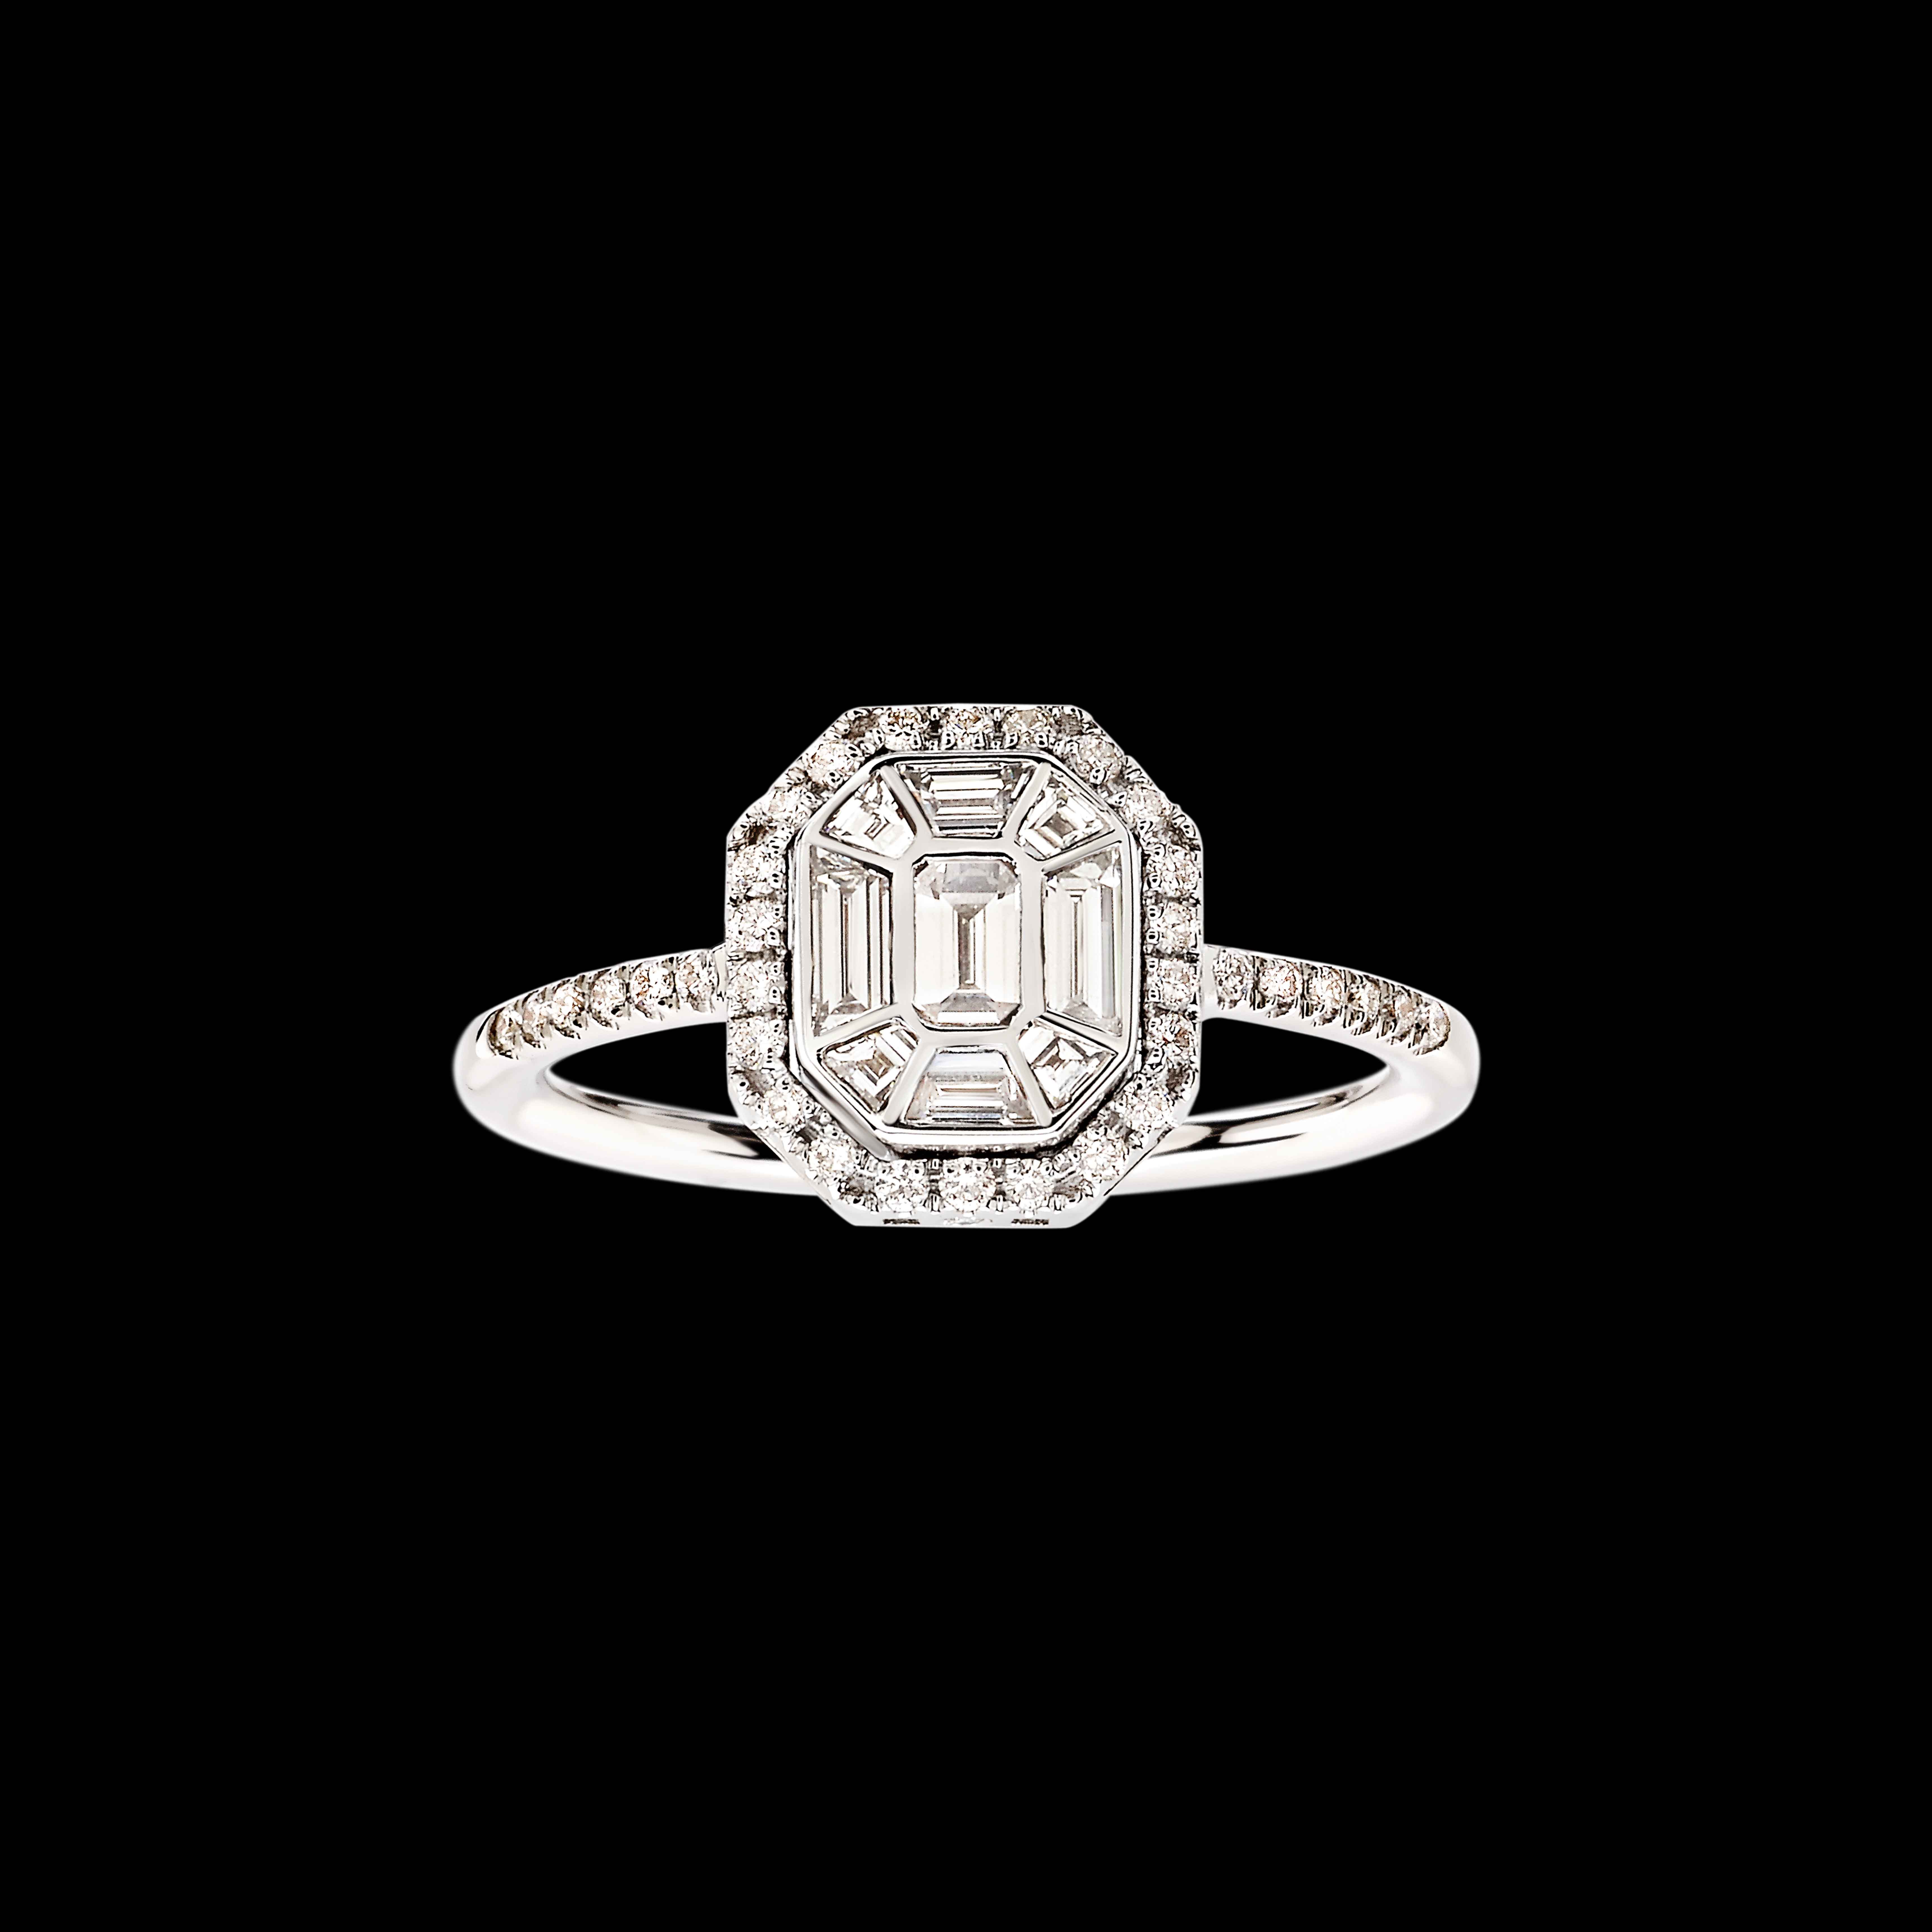 Massimo Raiteri exclusive jewellery diamonds diamanti ring anelli anello emerald cut fancy diamonds diamanti taglio smeraldo anello anelli gioiello solitari solitar engagement wedding fidanzamento